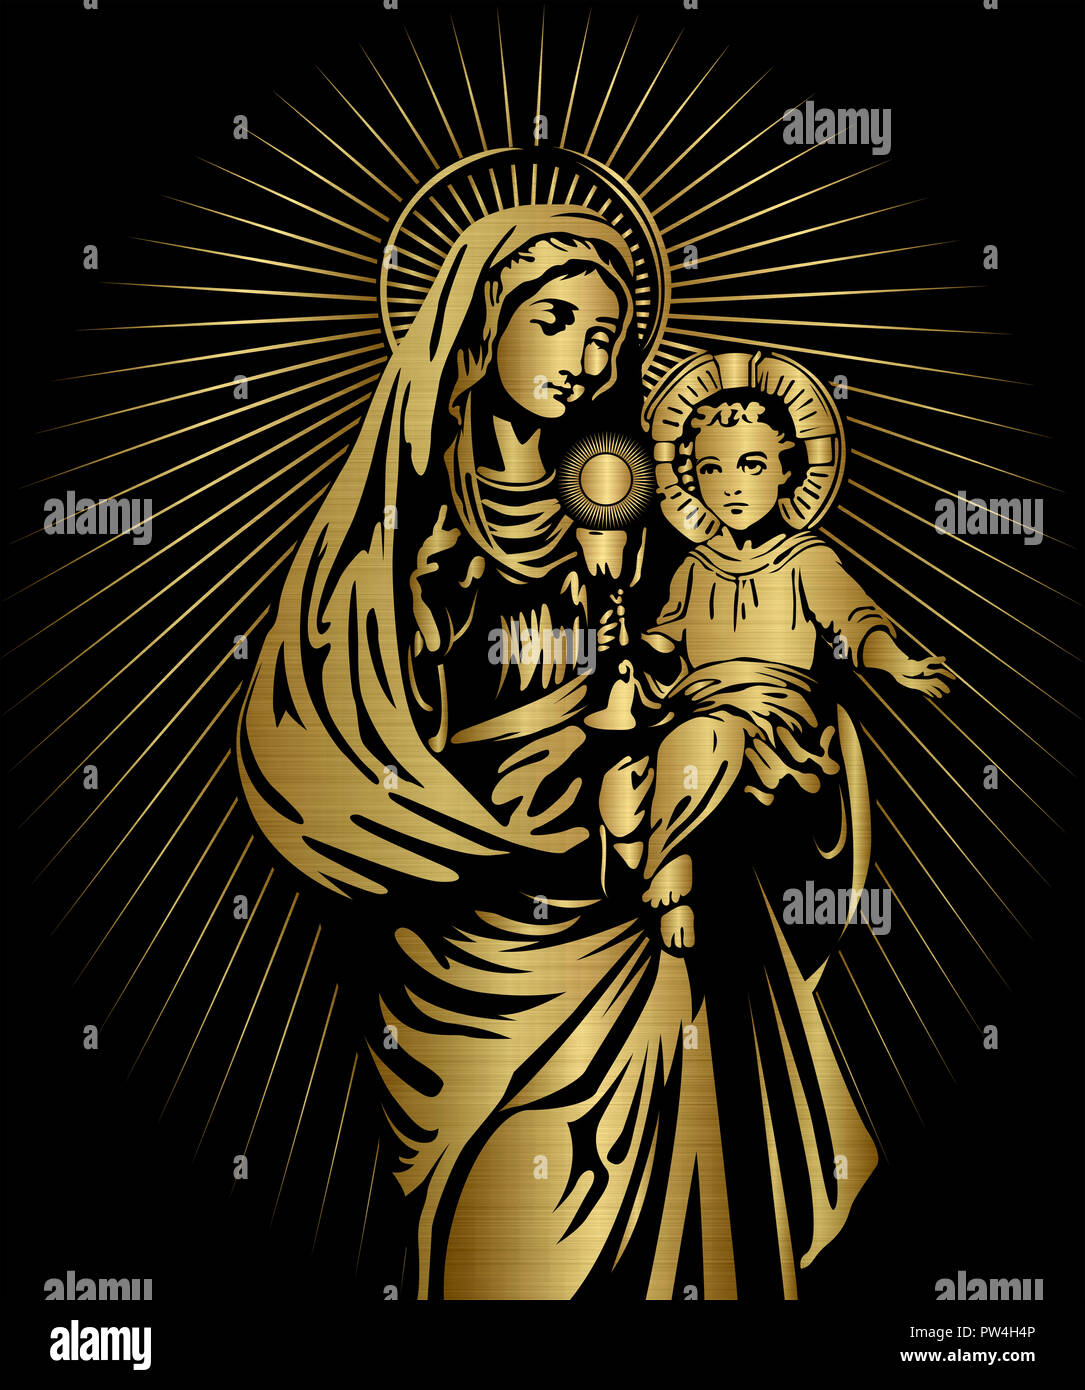 Sainte Vierge Marie et l'enfant Jésus illustration métallique d'or Banque D'Images